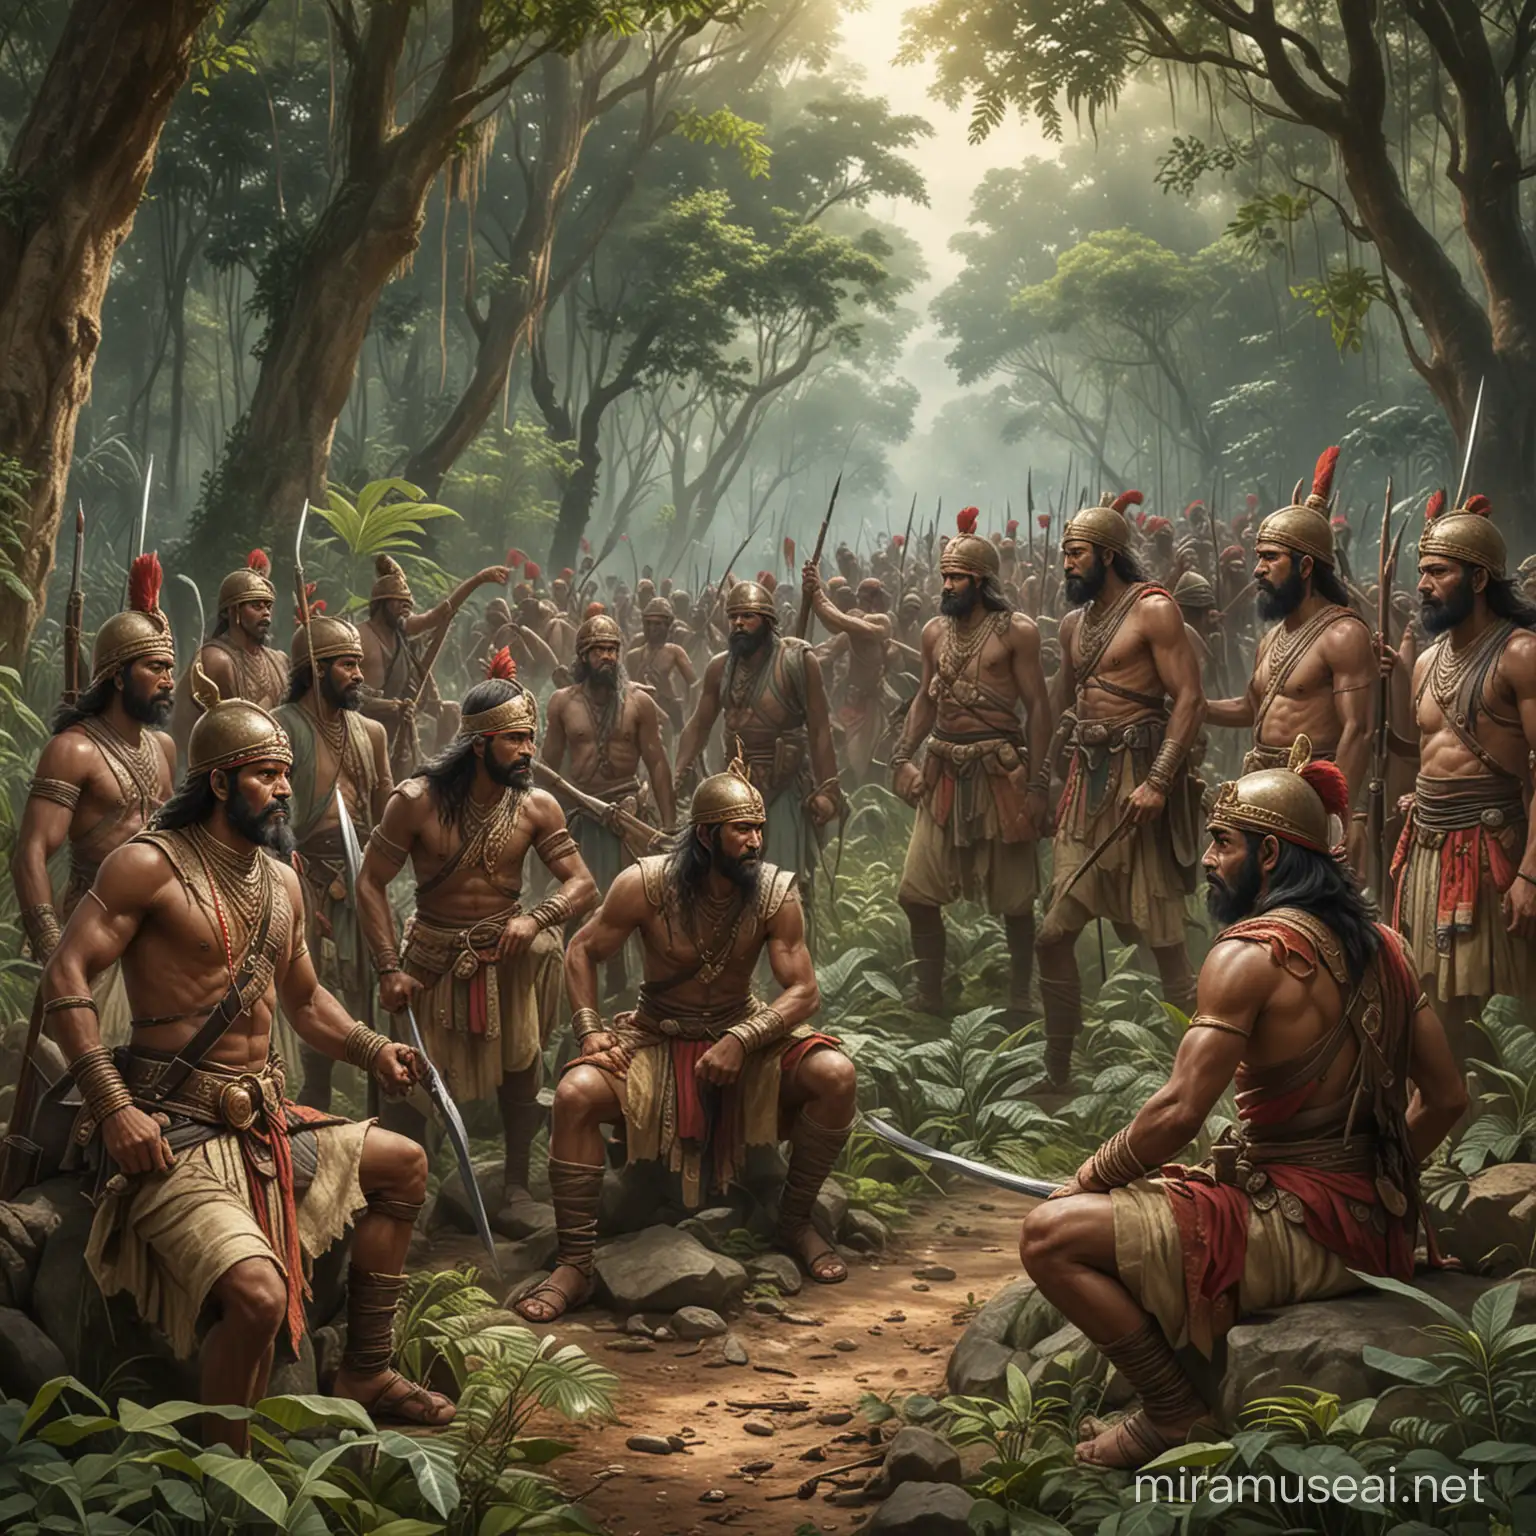 Pangeran Antasari Leading Banjar Warriors in Jungle Defense